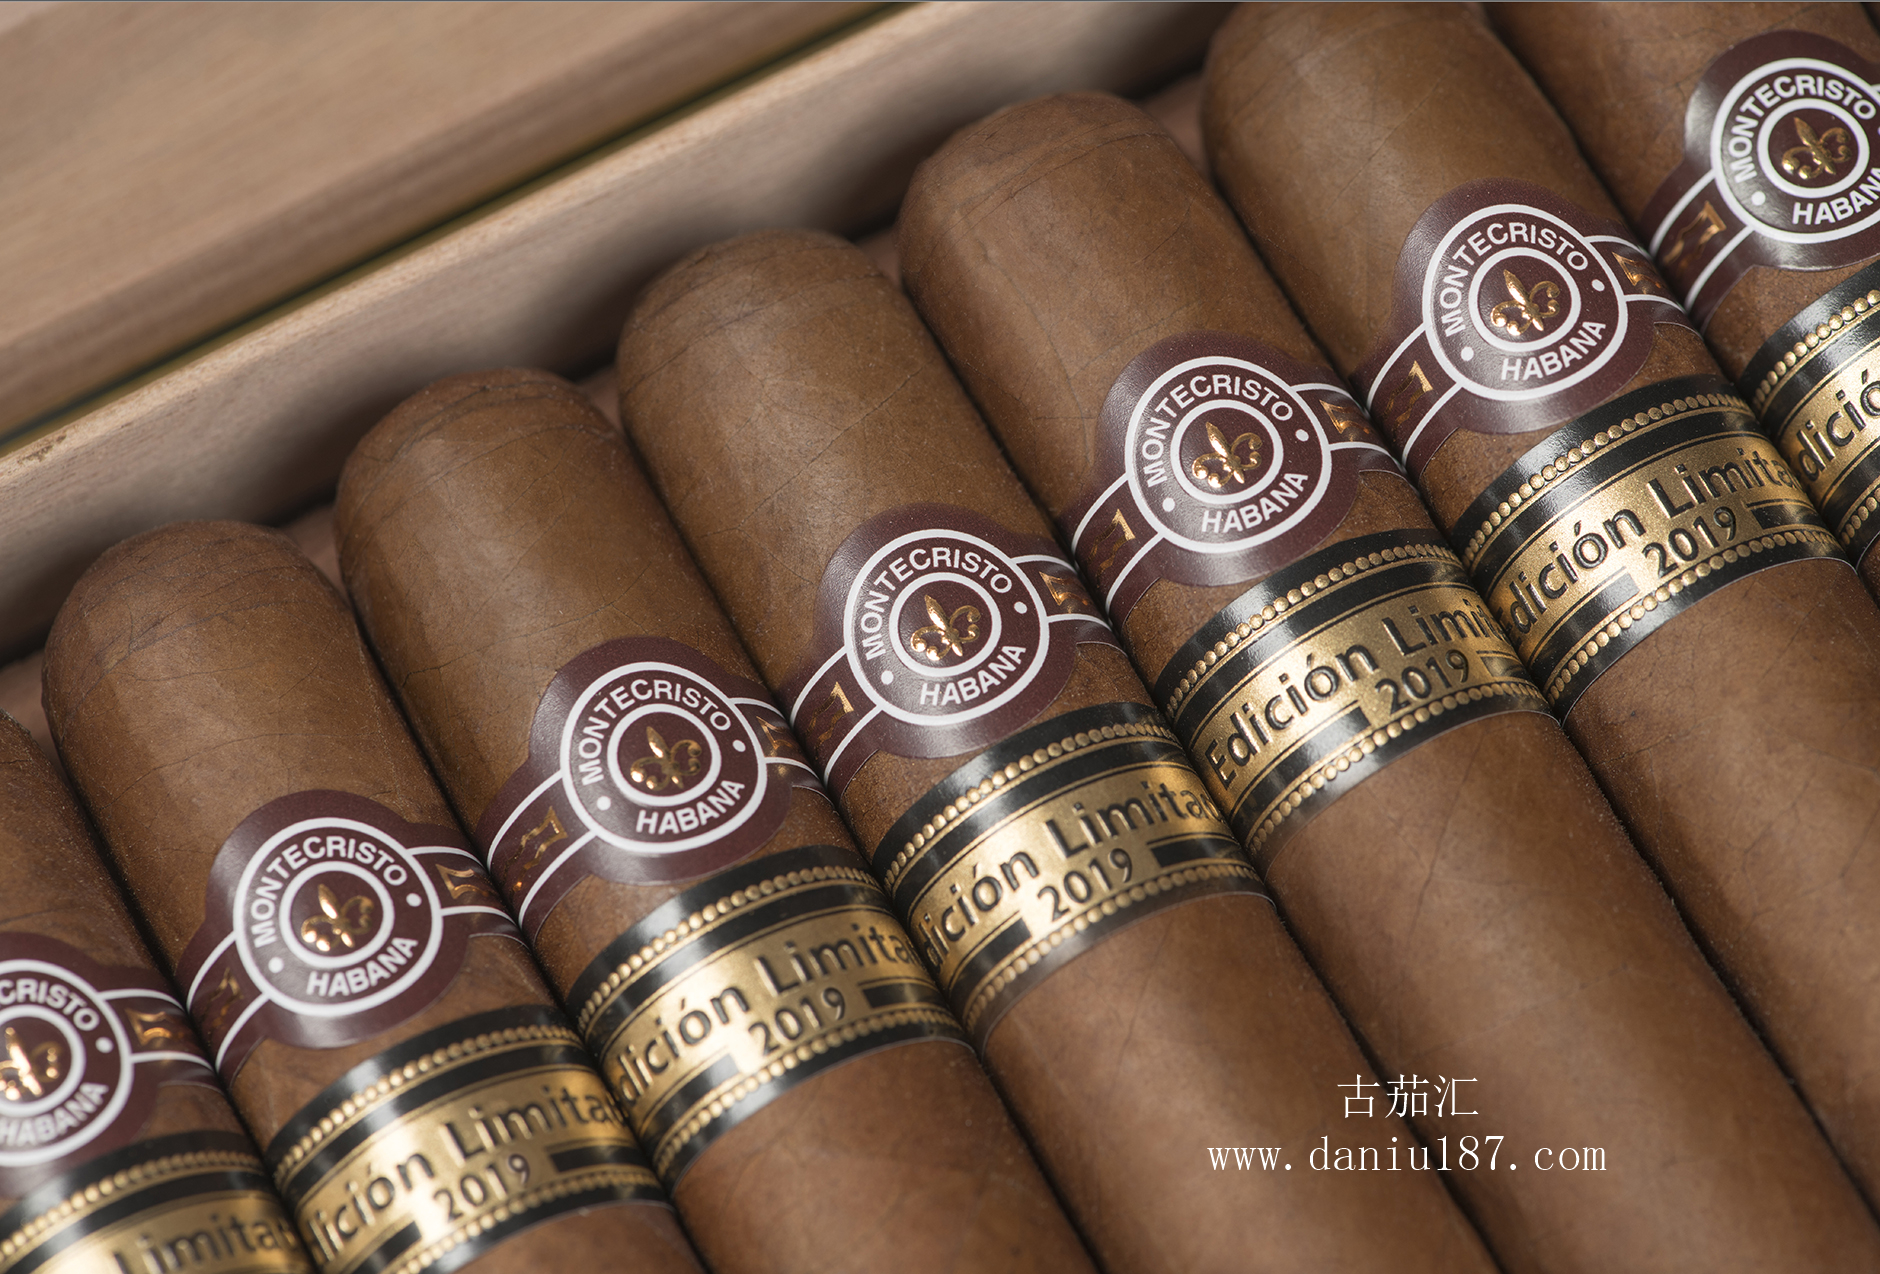 蒙特montecristo限量雪茄supremos的尺寸为51/8英寸(130毫米)x55环规